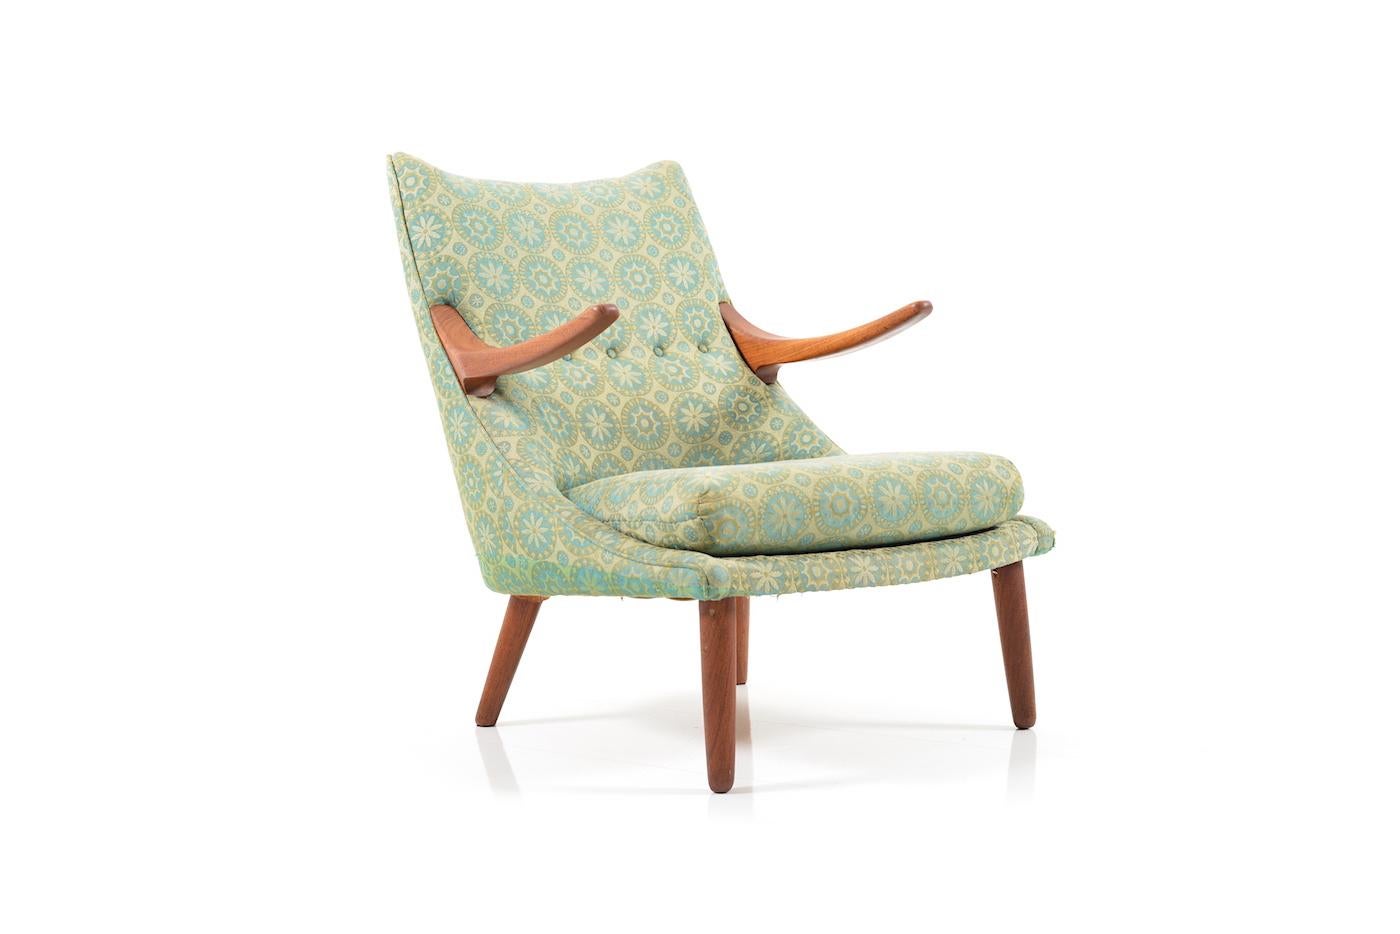 Einzigartiger Sessel des dänischen Designers und Möbelherstellers Svend Skipper. Dieser Prototyp ist nie in Serie gegangen und stammt aus dem Privathaus des Designers. Entworfen und hergestellt in den frühen 1950er Jahren. Rahmen und Armlehnen  aus